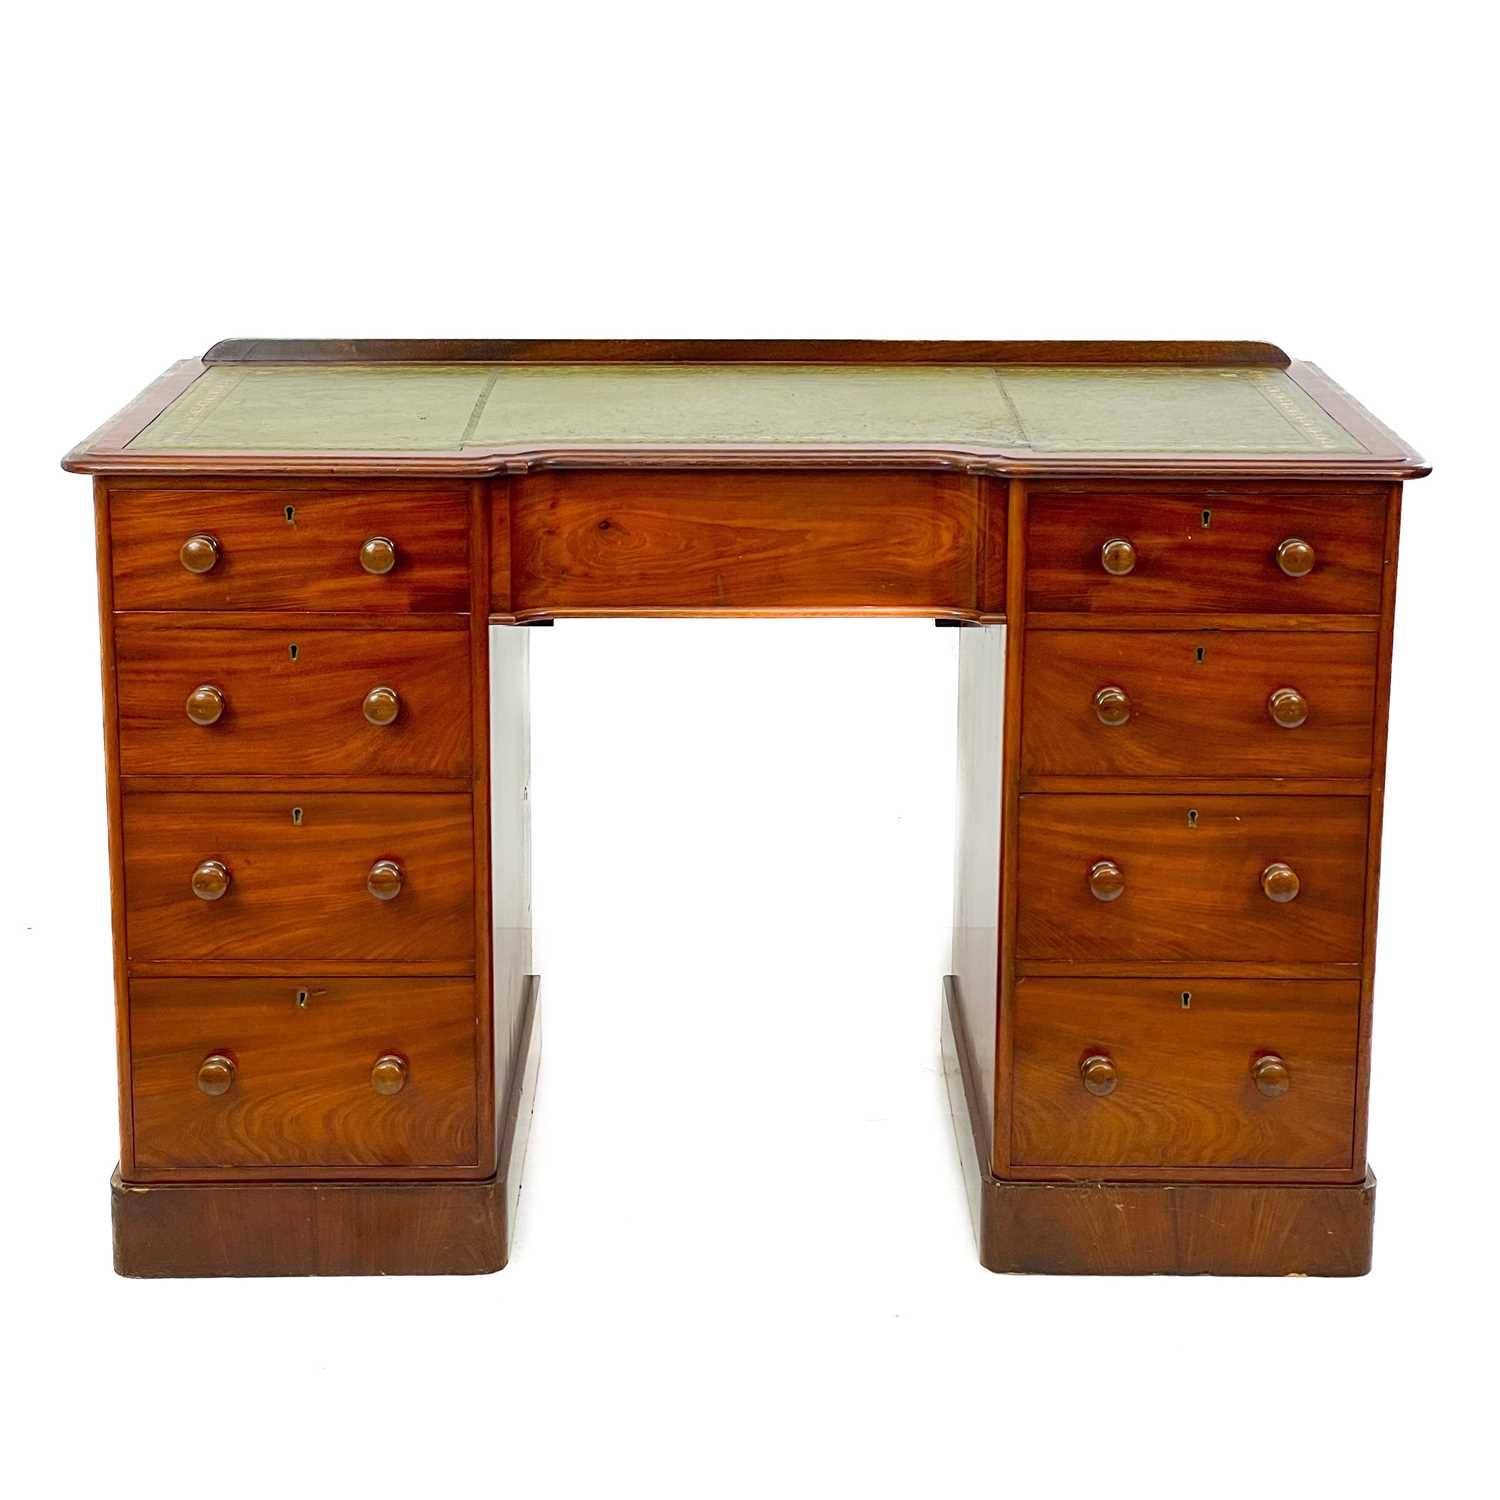 A Victorian mahogany fixed pedestal desk.